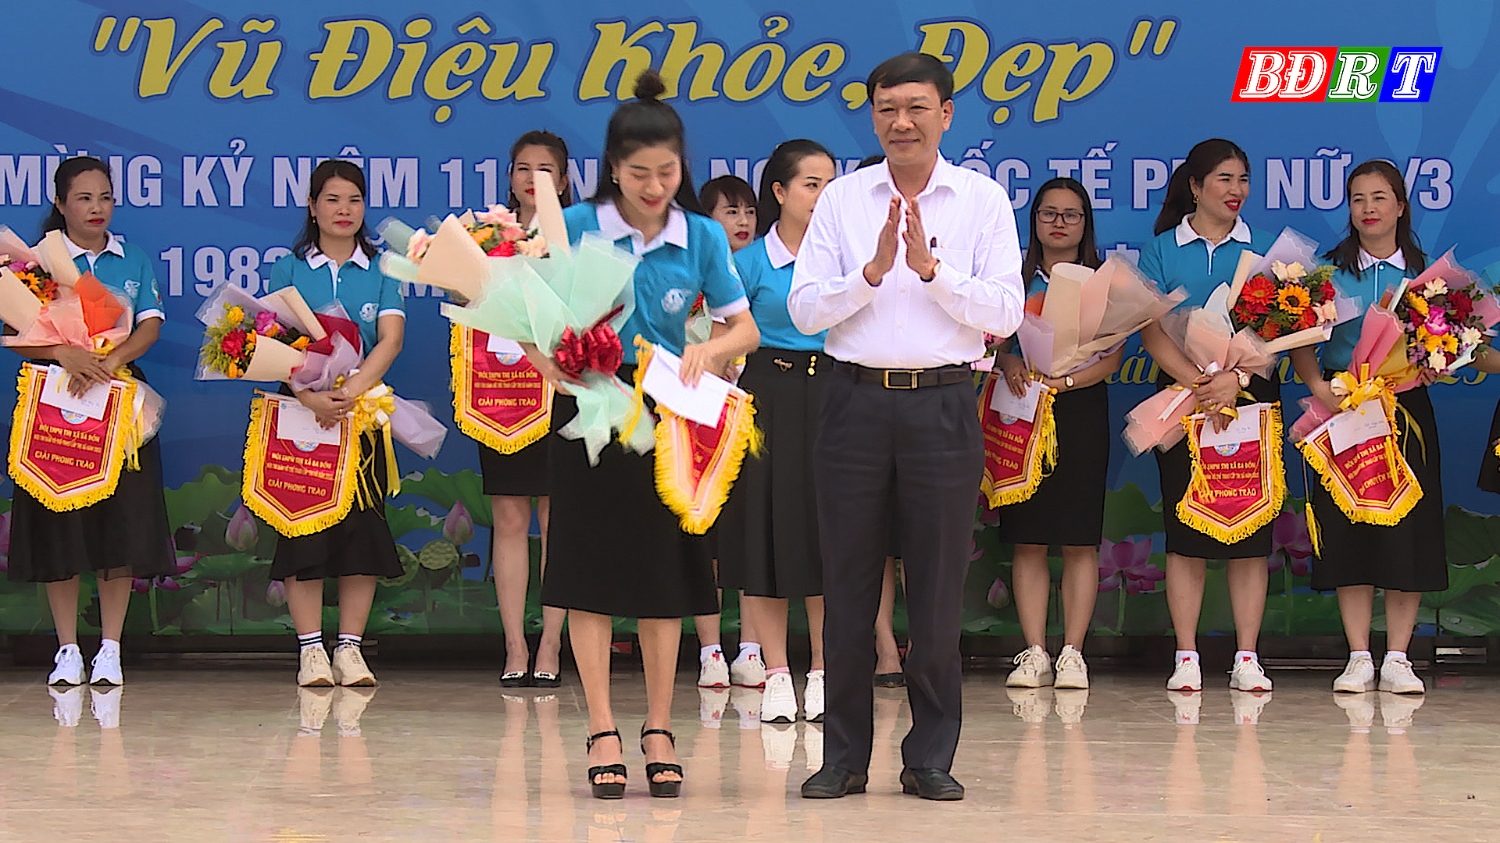 Đồng chí Nguyễn An Bình, Chủ tịch UBMTTQVN thị xã trao giải nhì cho các đội